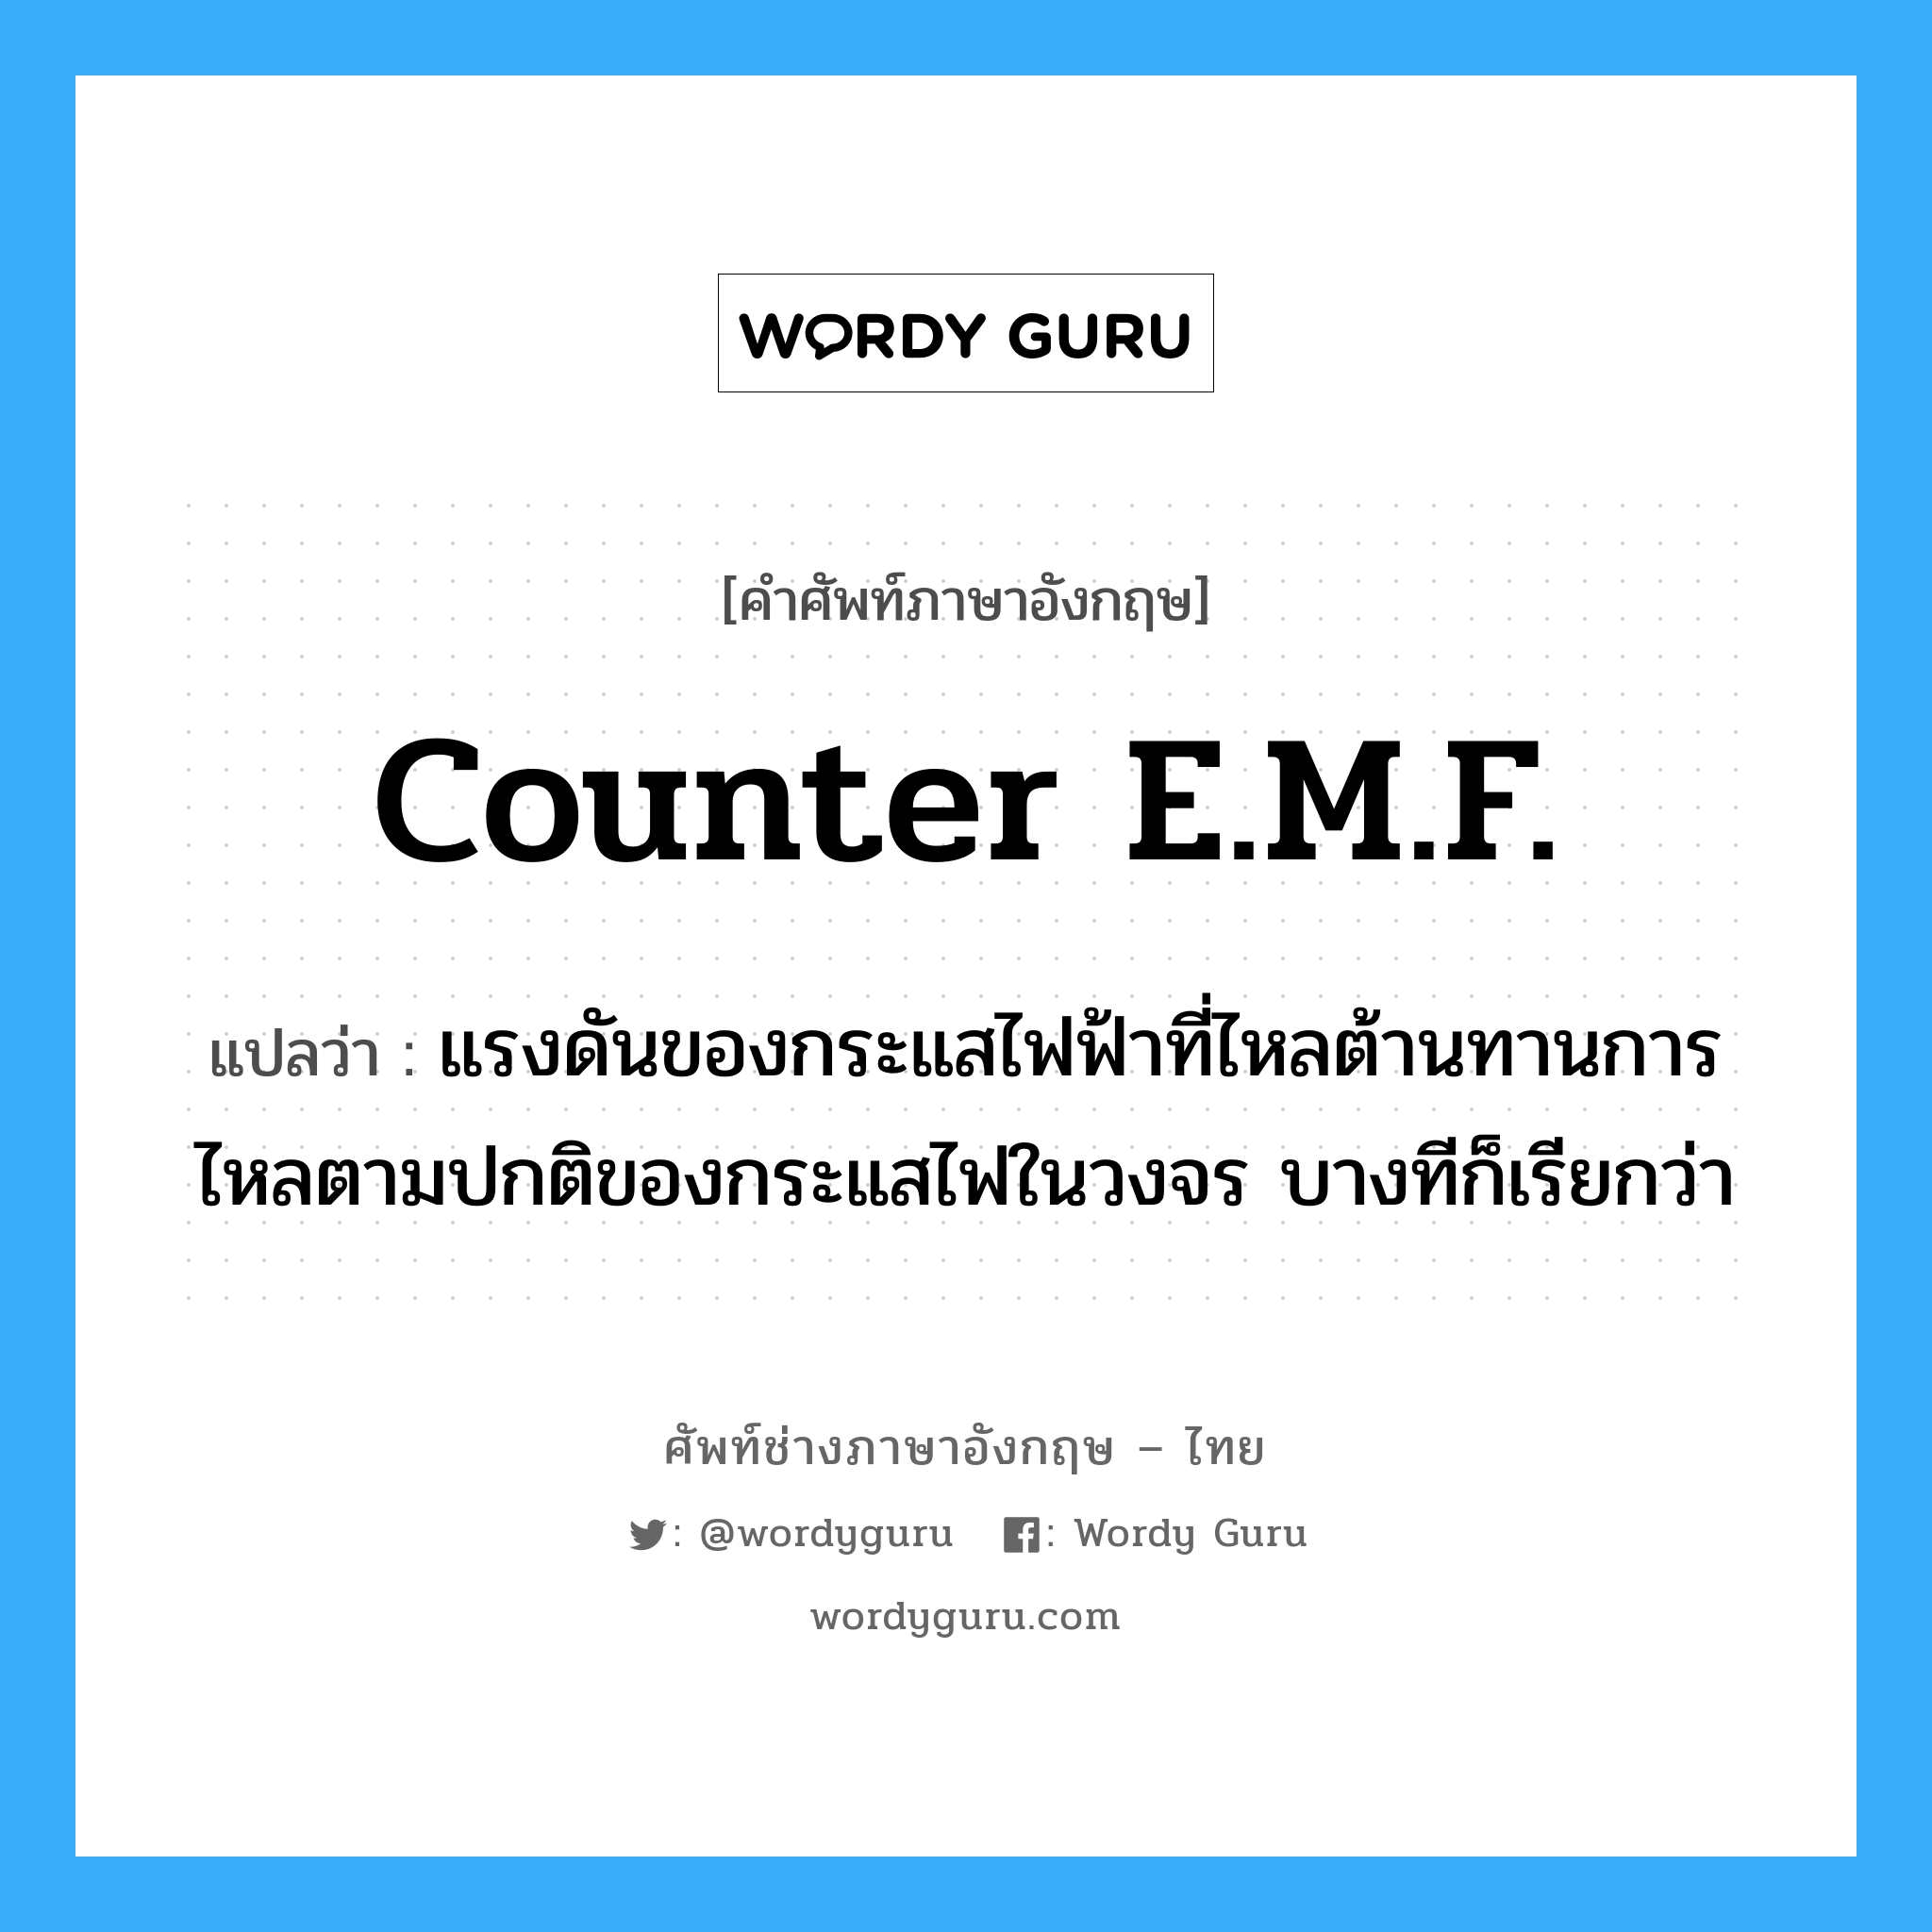 counter E.M.F. แปลว่า?, คำศัพท์ช่างภาษาอังกฤษ - ไทย counter E.M.F. คำศัพท์ภาษาอังกฤษ counter E.M.F. แปลว่า แรงดันของกระแสไฟฟ้าที่ไหลต้านทานการไหลตามปกติของกระแสไฟในวงจร บางทีก็เรียกว่า